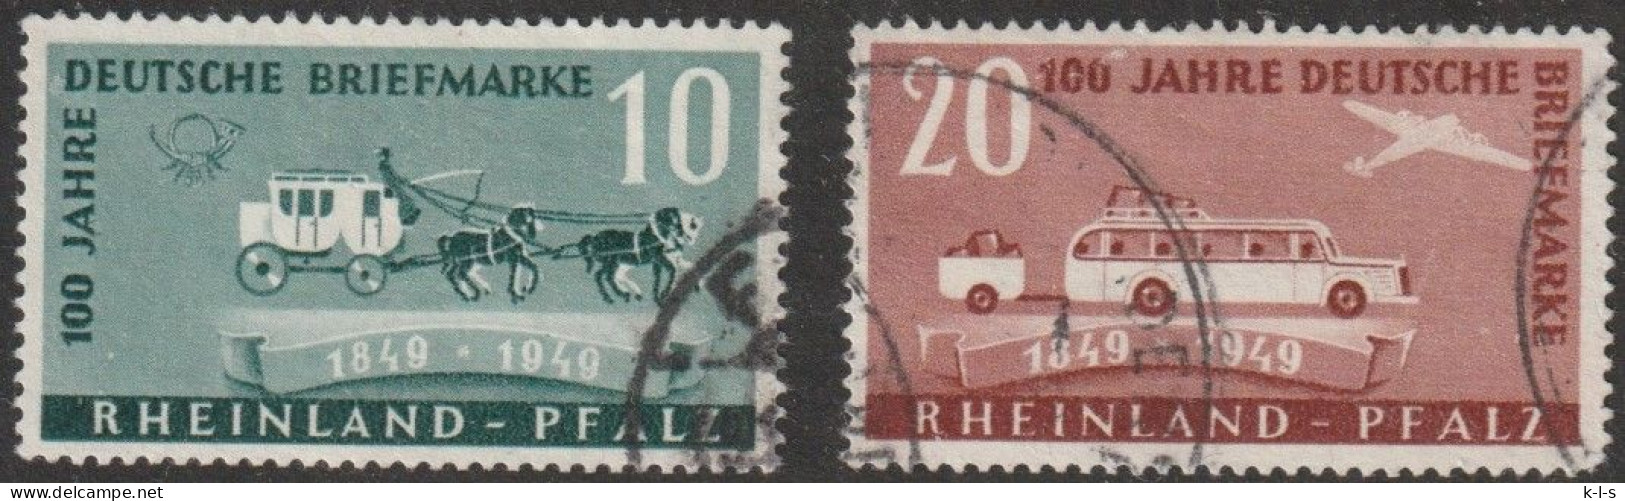 Franz. Zone- Rheinland Pfalz: 1949, Mi. Nr. 49-50,  100 Jahre Deutsche Briefmarken.  Gestpl./used - Rijnland-Palts